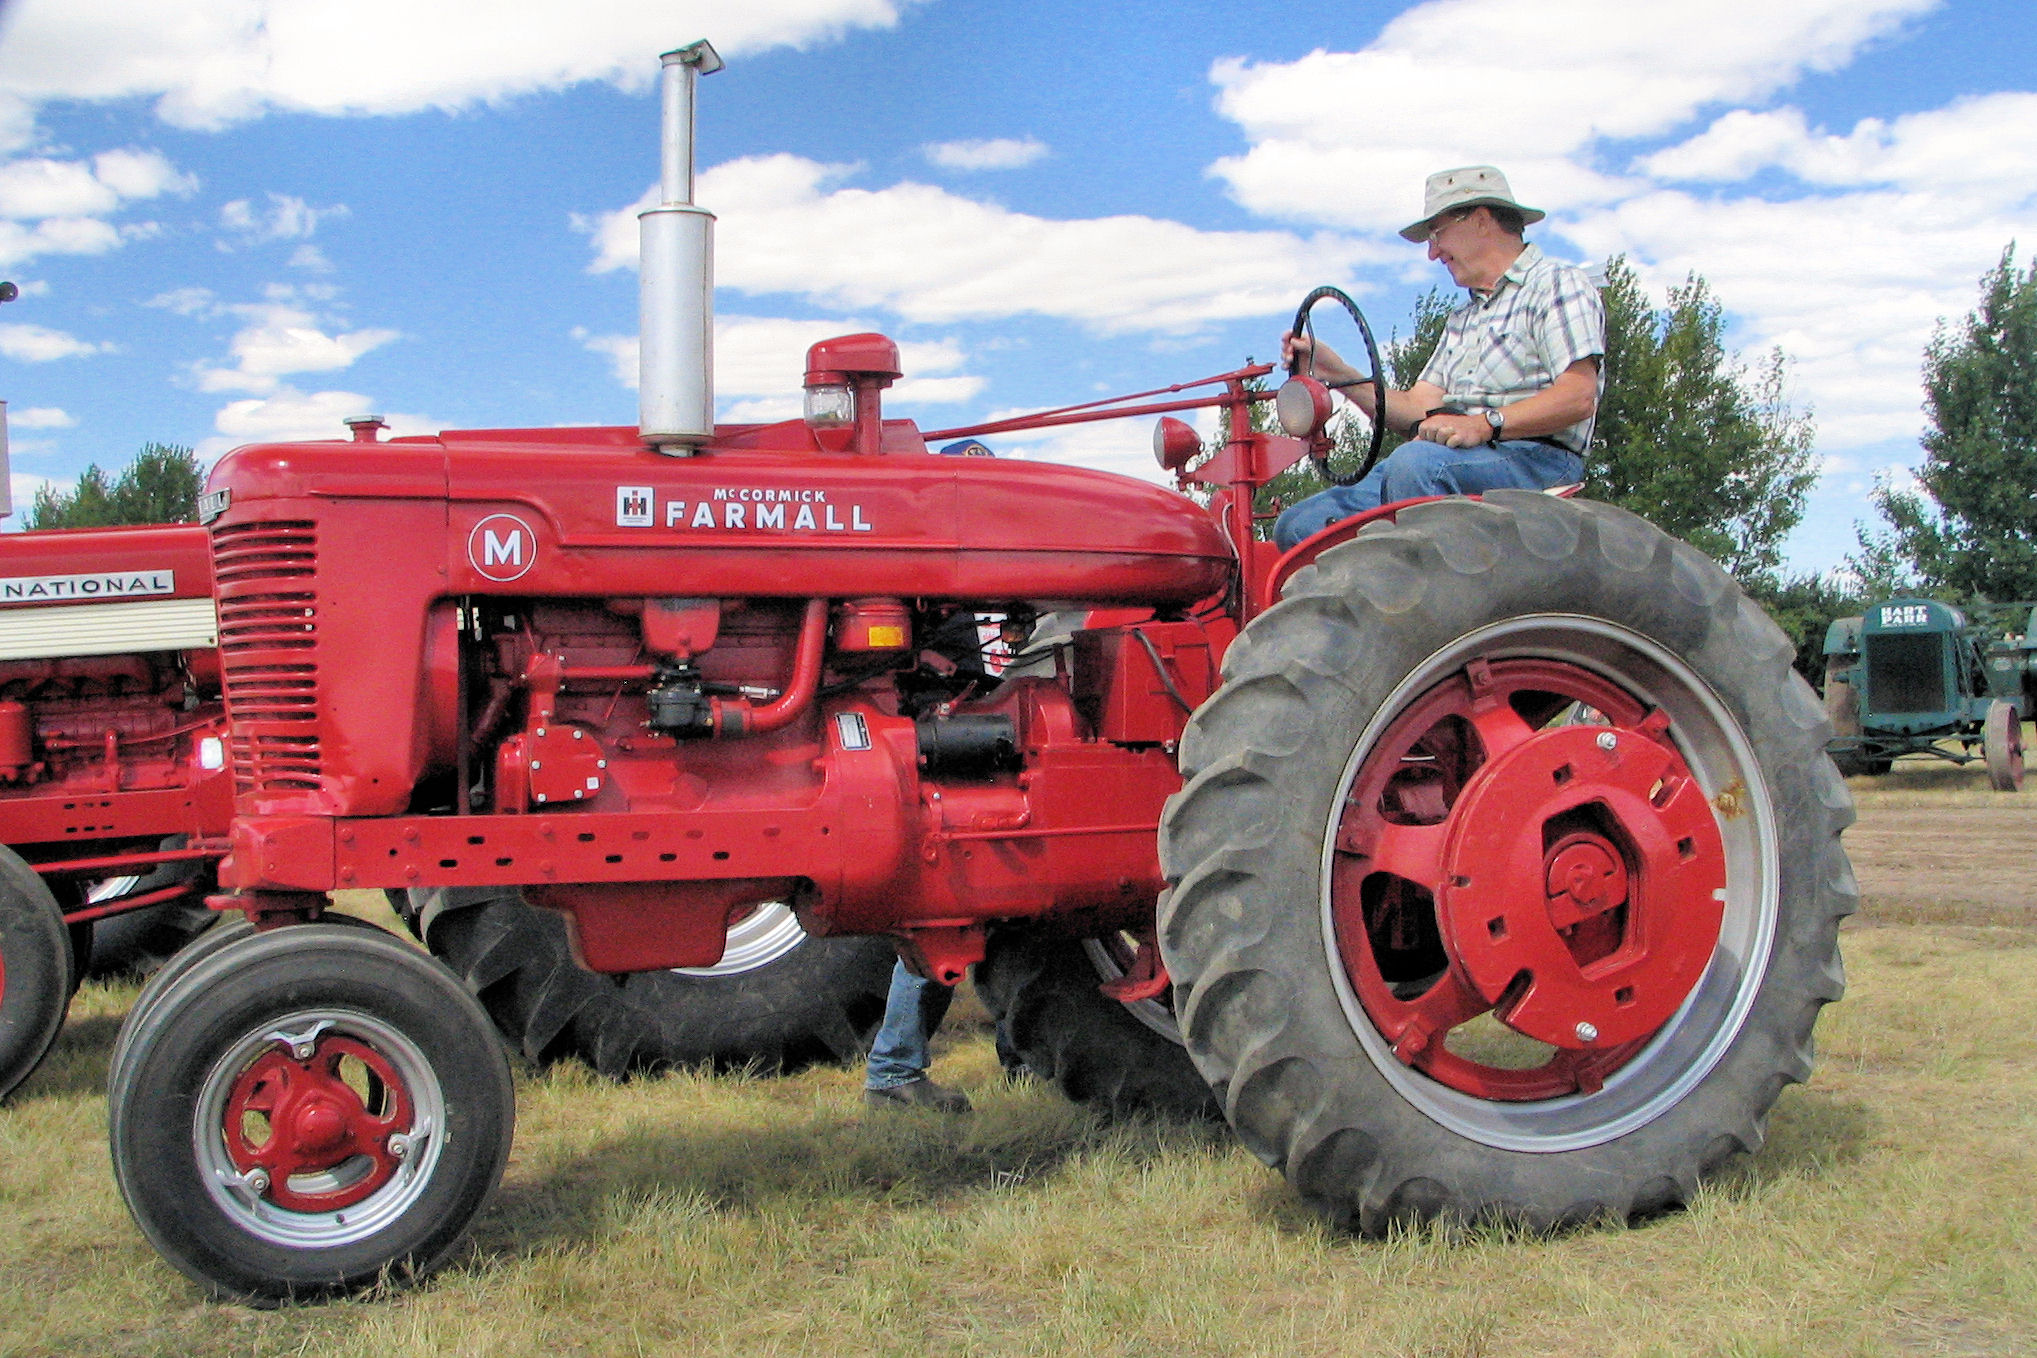 International Harvester Farmall M Tractor | Flickr - Photo Sharing!